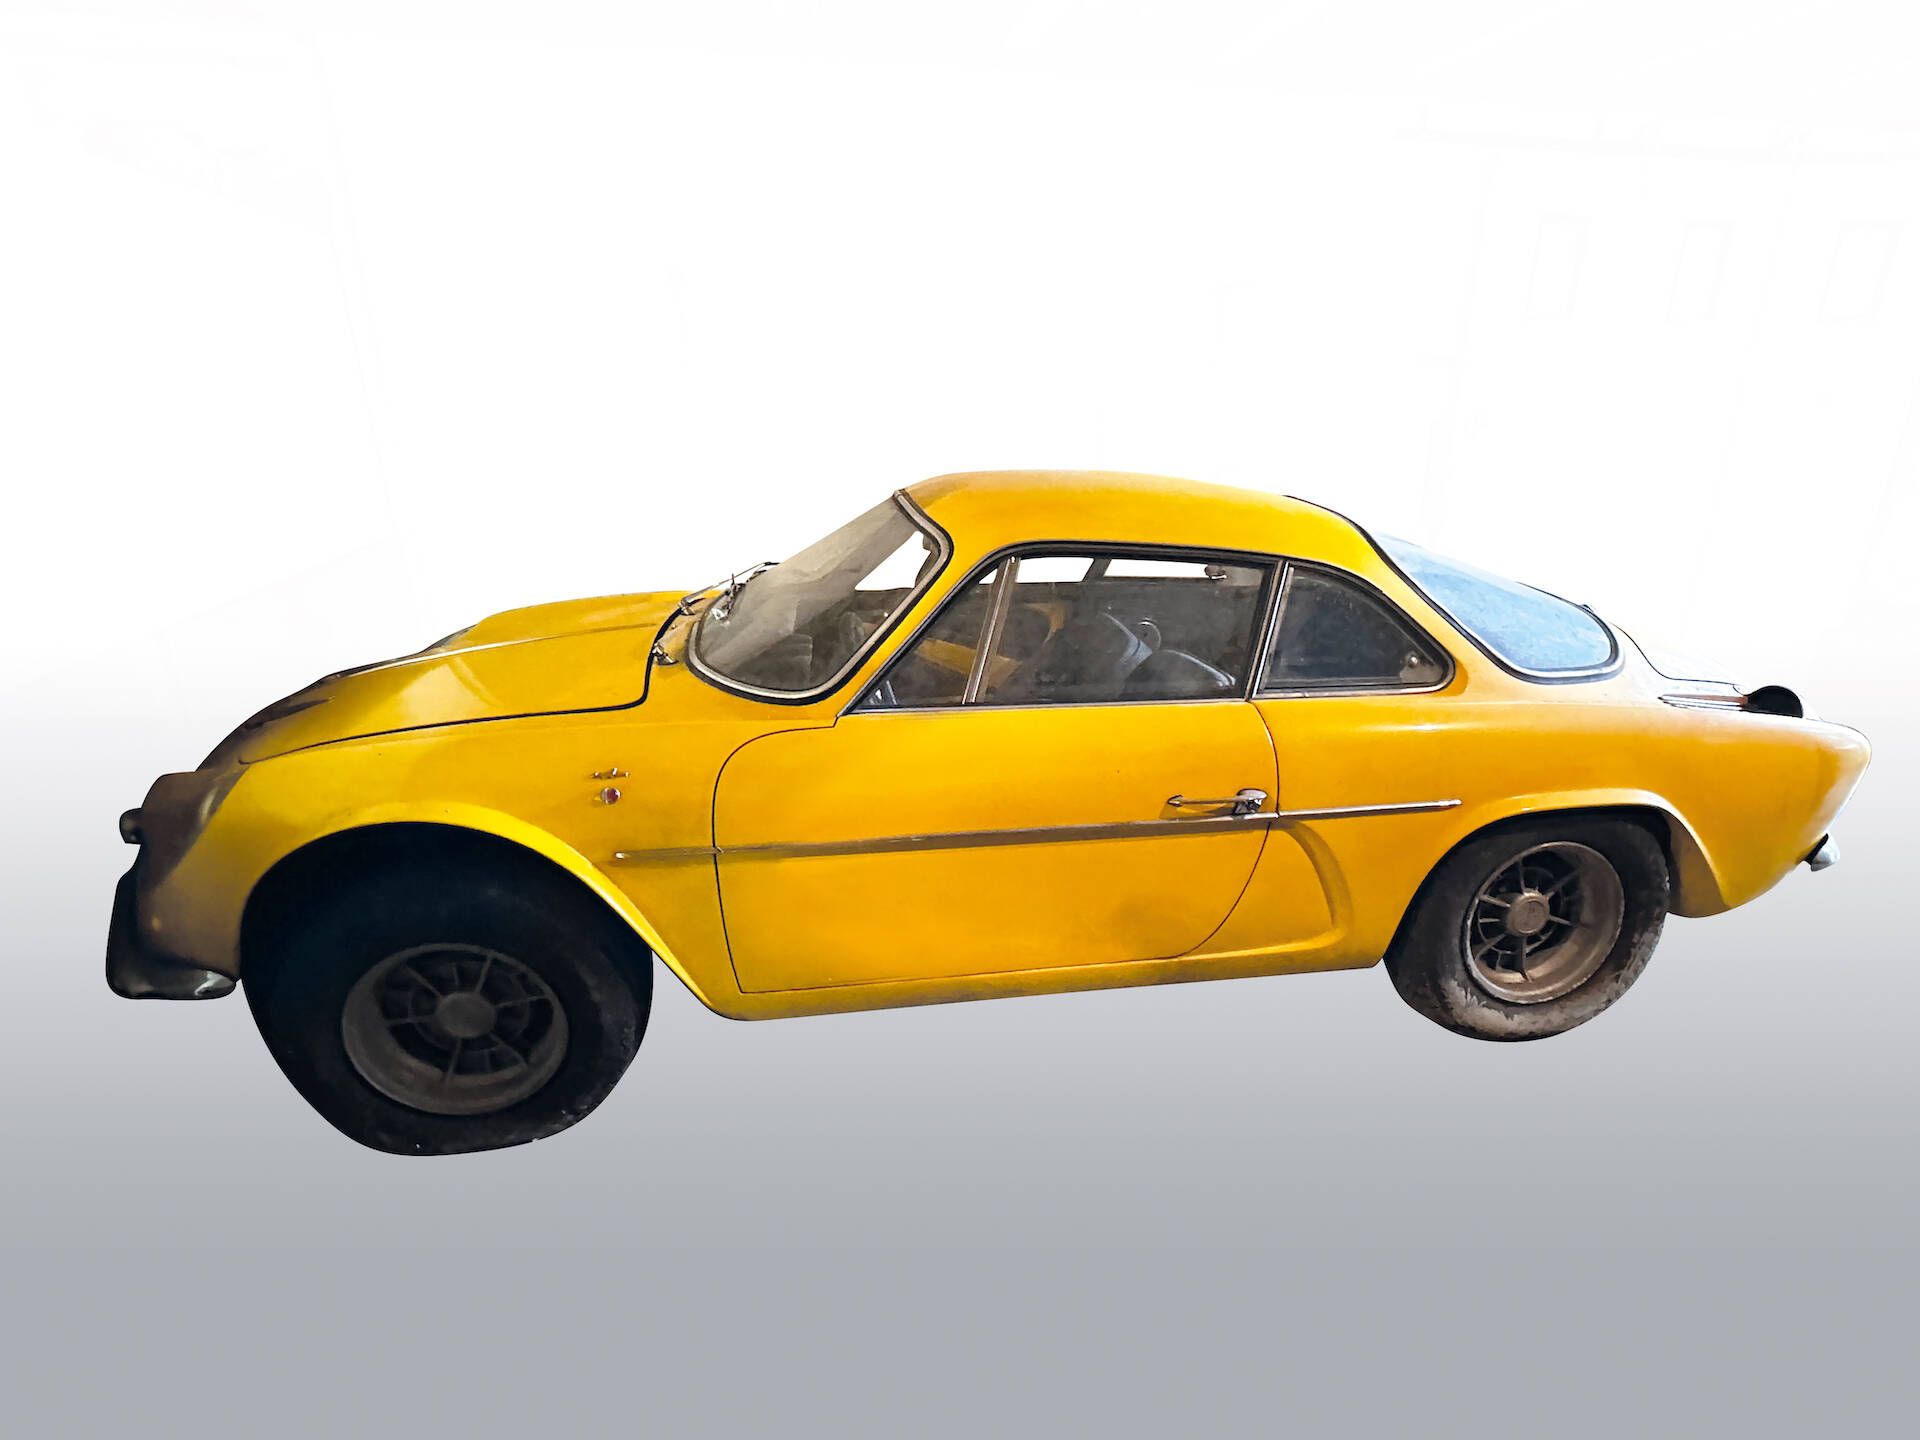 Null 雷诺阿尔派 A110 1600（1969 年产） - 黄色 
一手车 
注册号：7543AM92
首次注册日期：13/03/1969
序列号 : 16&hellip;